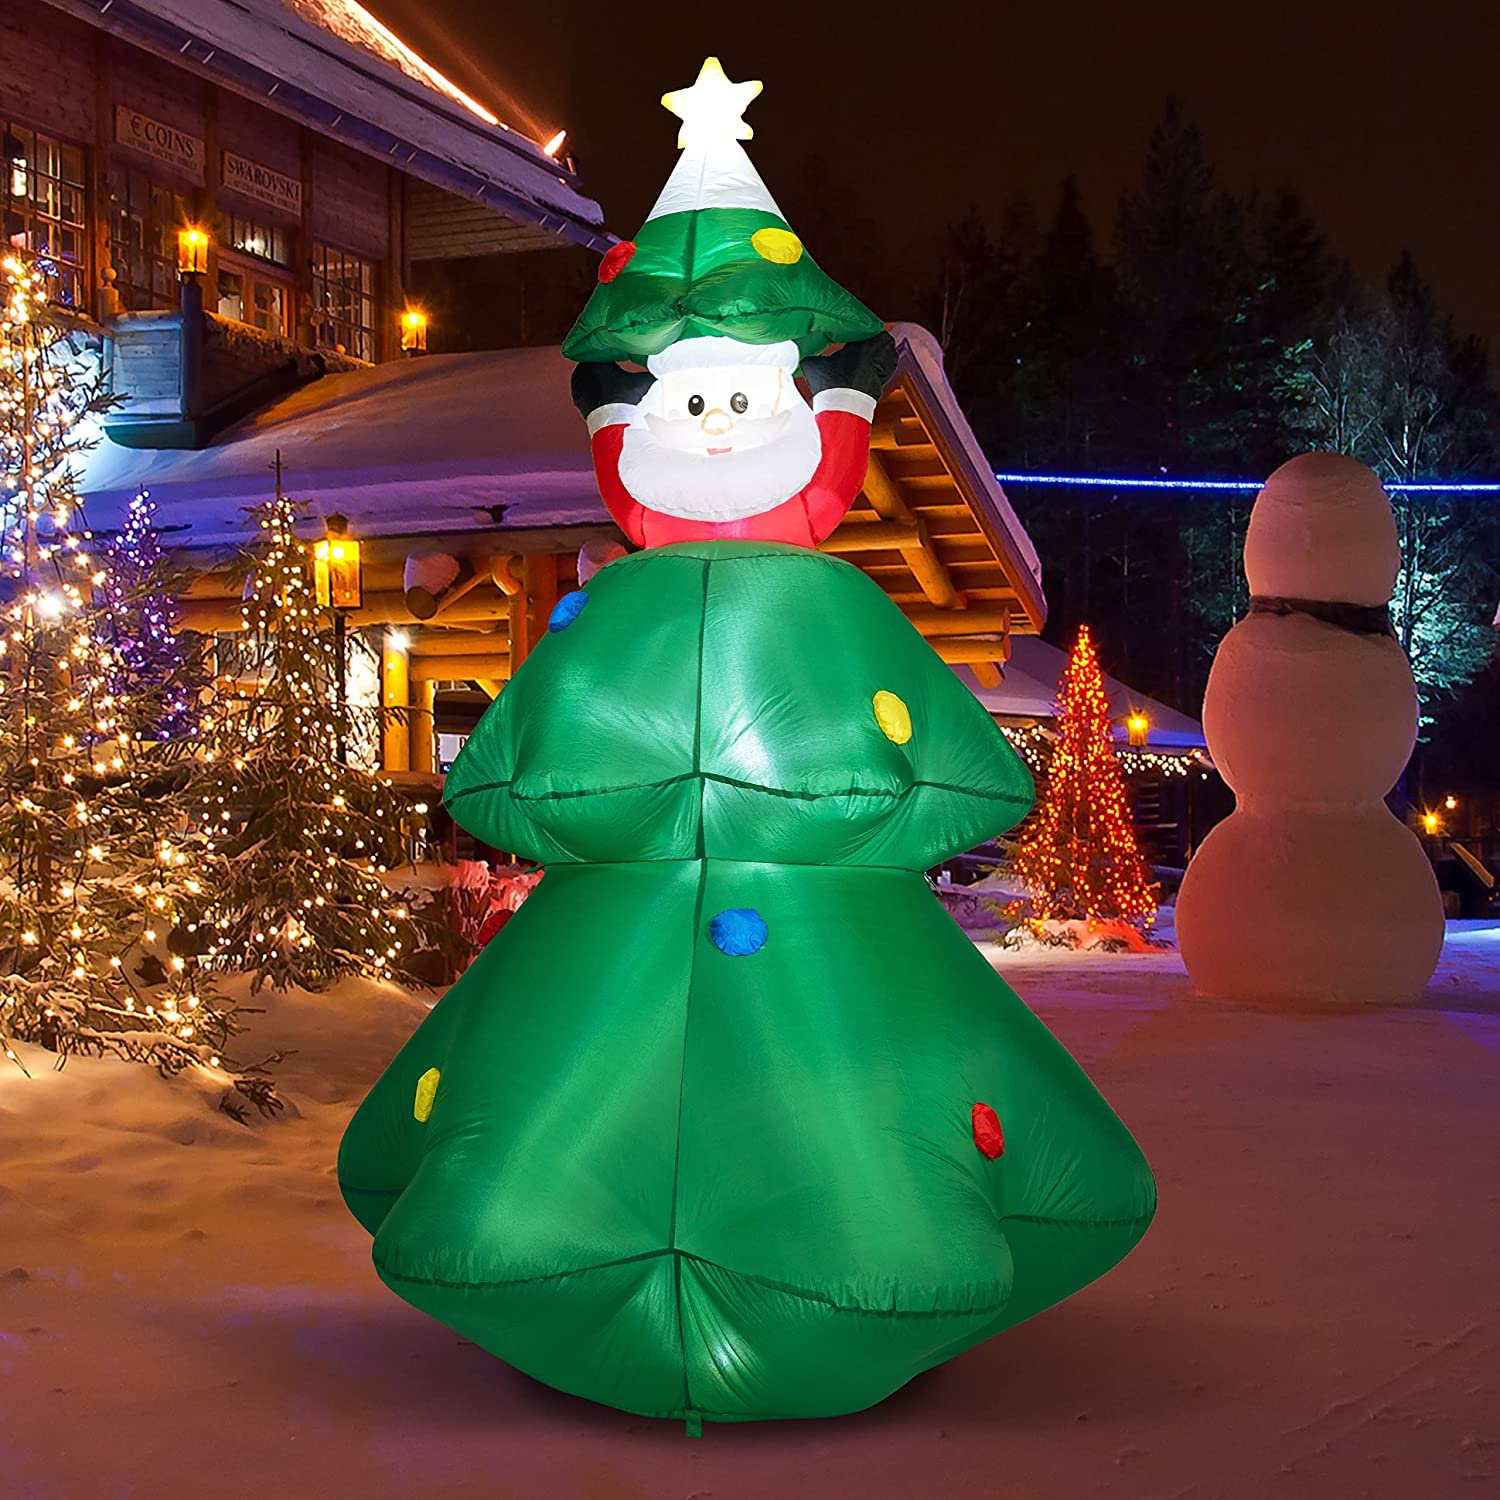 Decoración inflable de árbol de Navidad con Papá Noel, decoraciones de Navidad de 6 pies con LED para patio, exterior, interior, jardín, césped